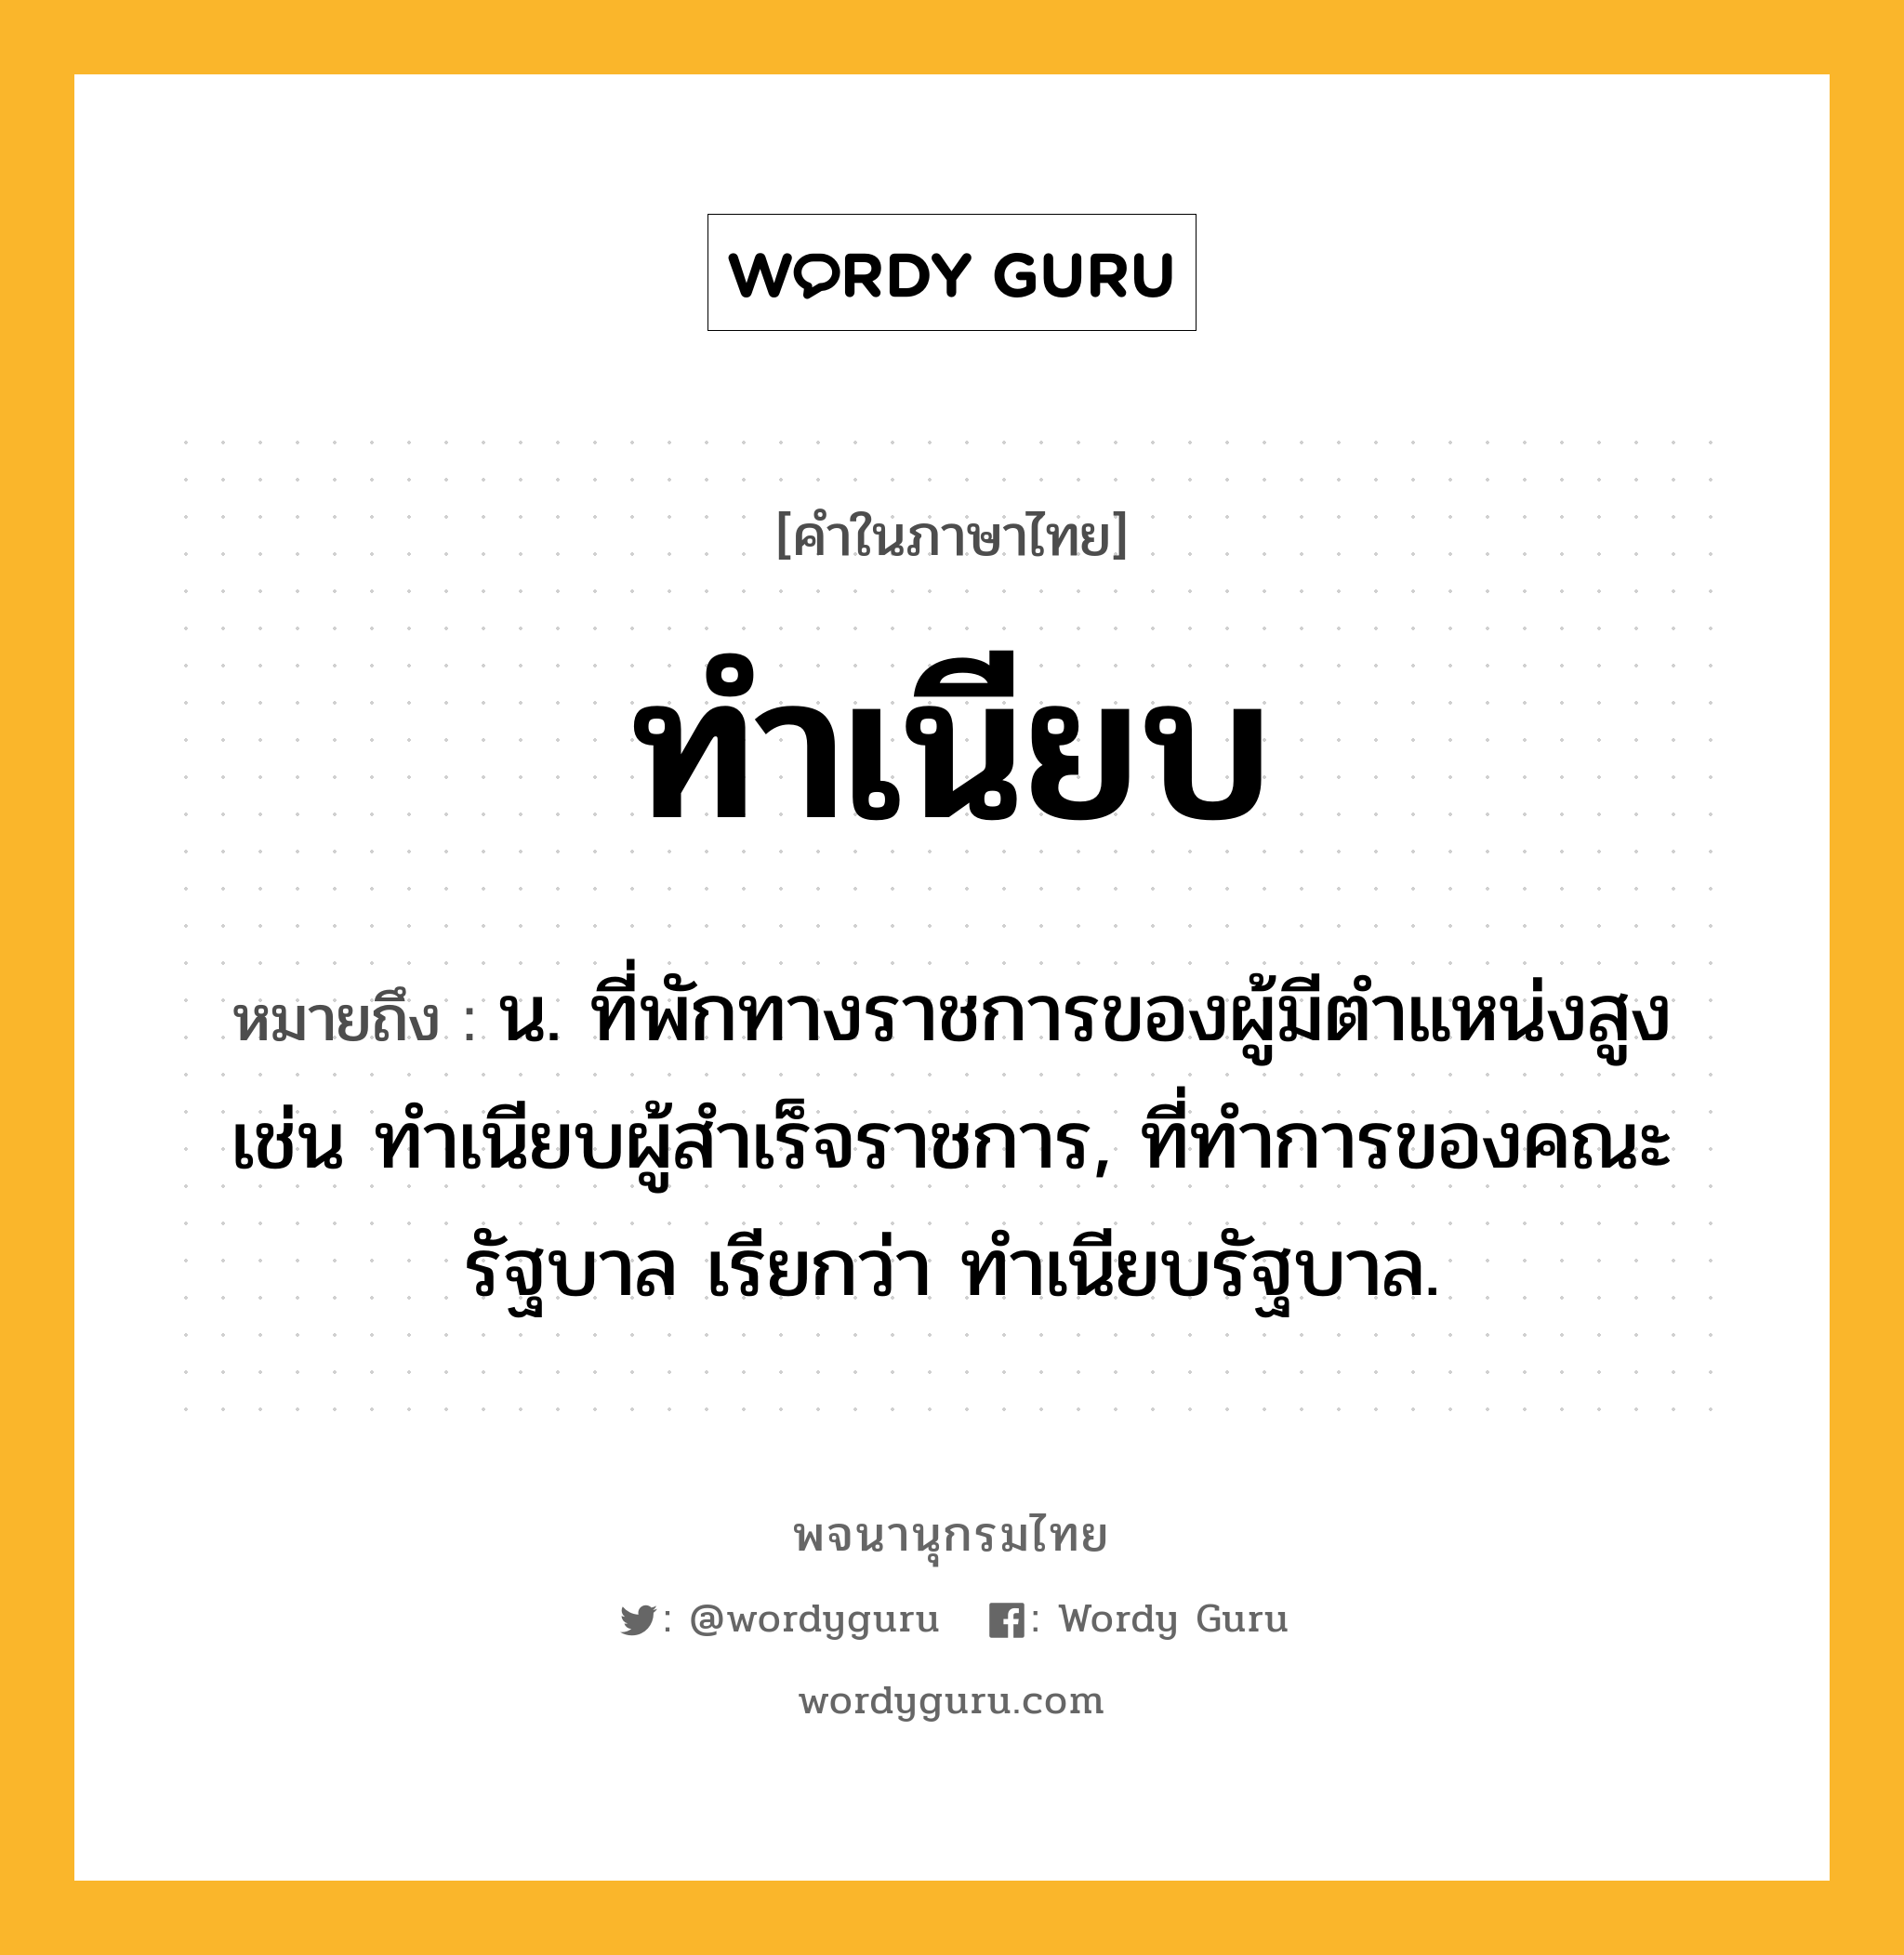 ทำเนียบ หมายถึงอะไร?, คำในภาษาไทย ทำเนียบ หมายถึง น. ที่พักทางราชการของผู้มีตําแหน่งสูง เช่น ทําเนียบผู้สําเร็จราชการ, ที่ทําการของคณะรัฐบาล เรียกว่า ทําเนียบรัฐบาล.